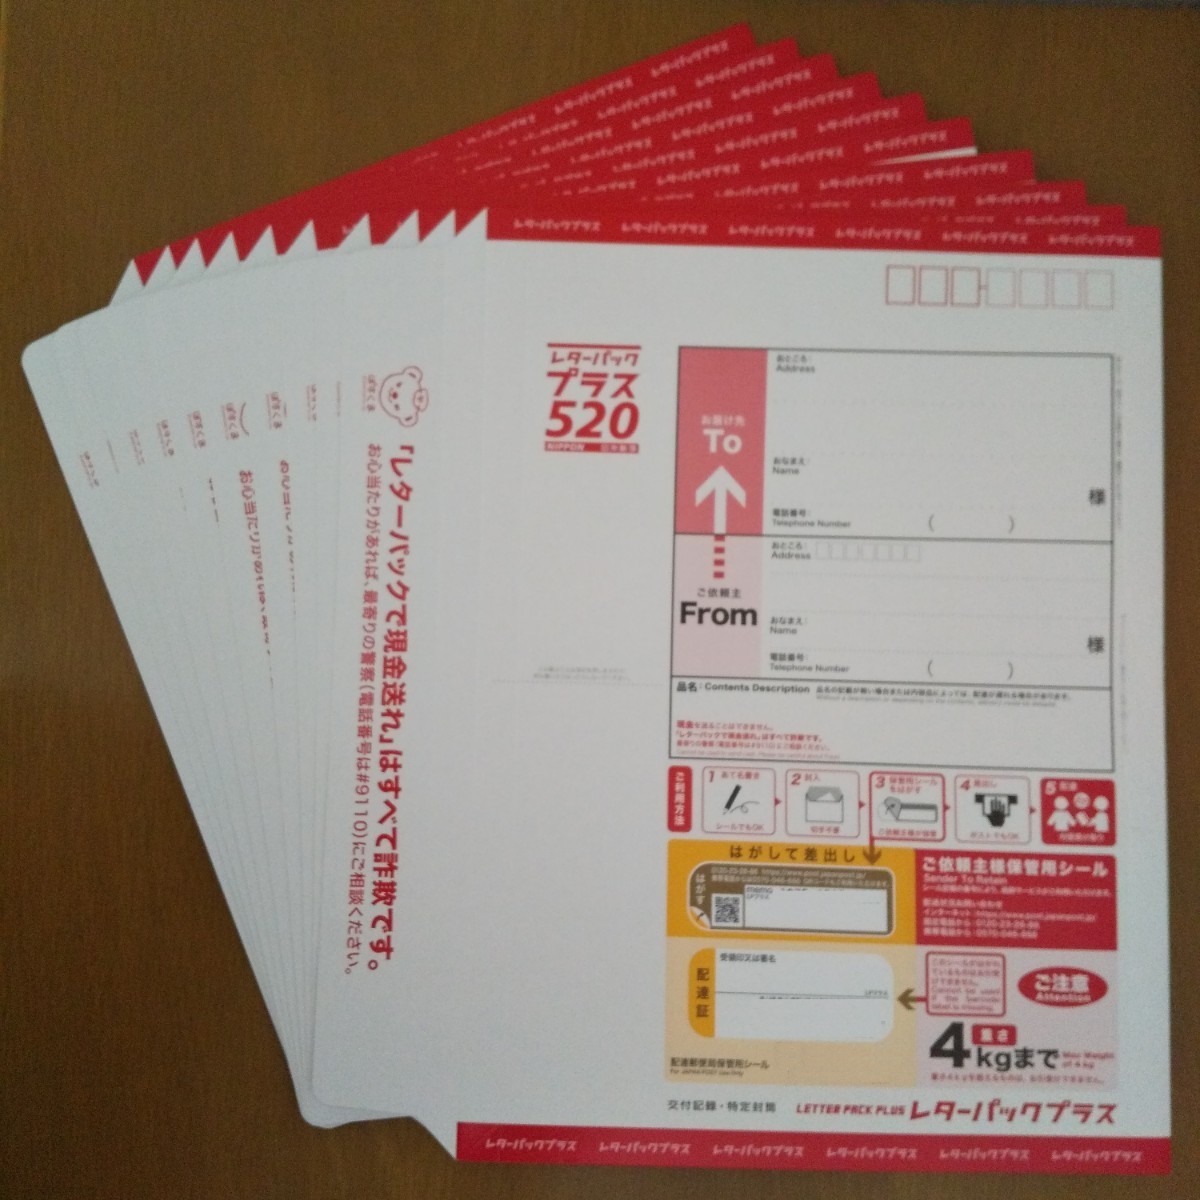 日本郵便 レターパックプラス520 10枚セット 交付記録付き特定封筒